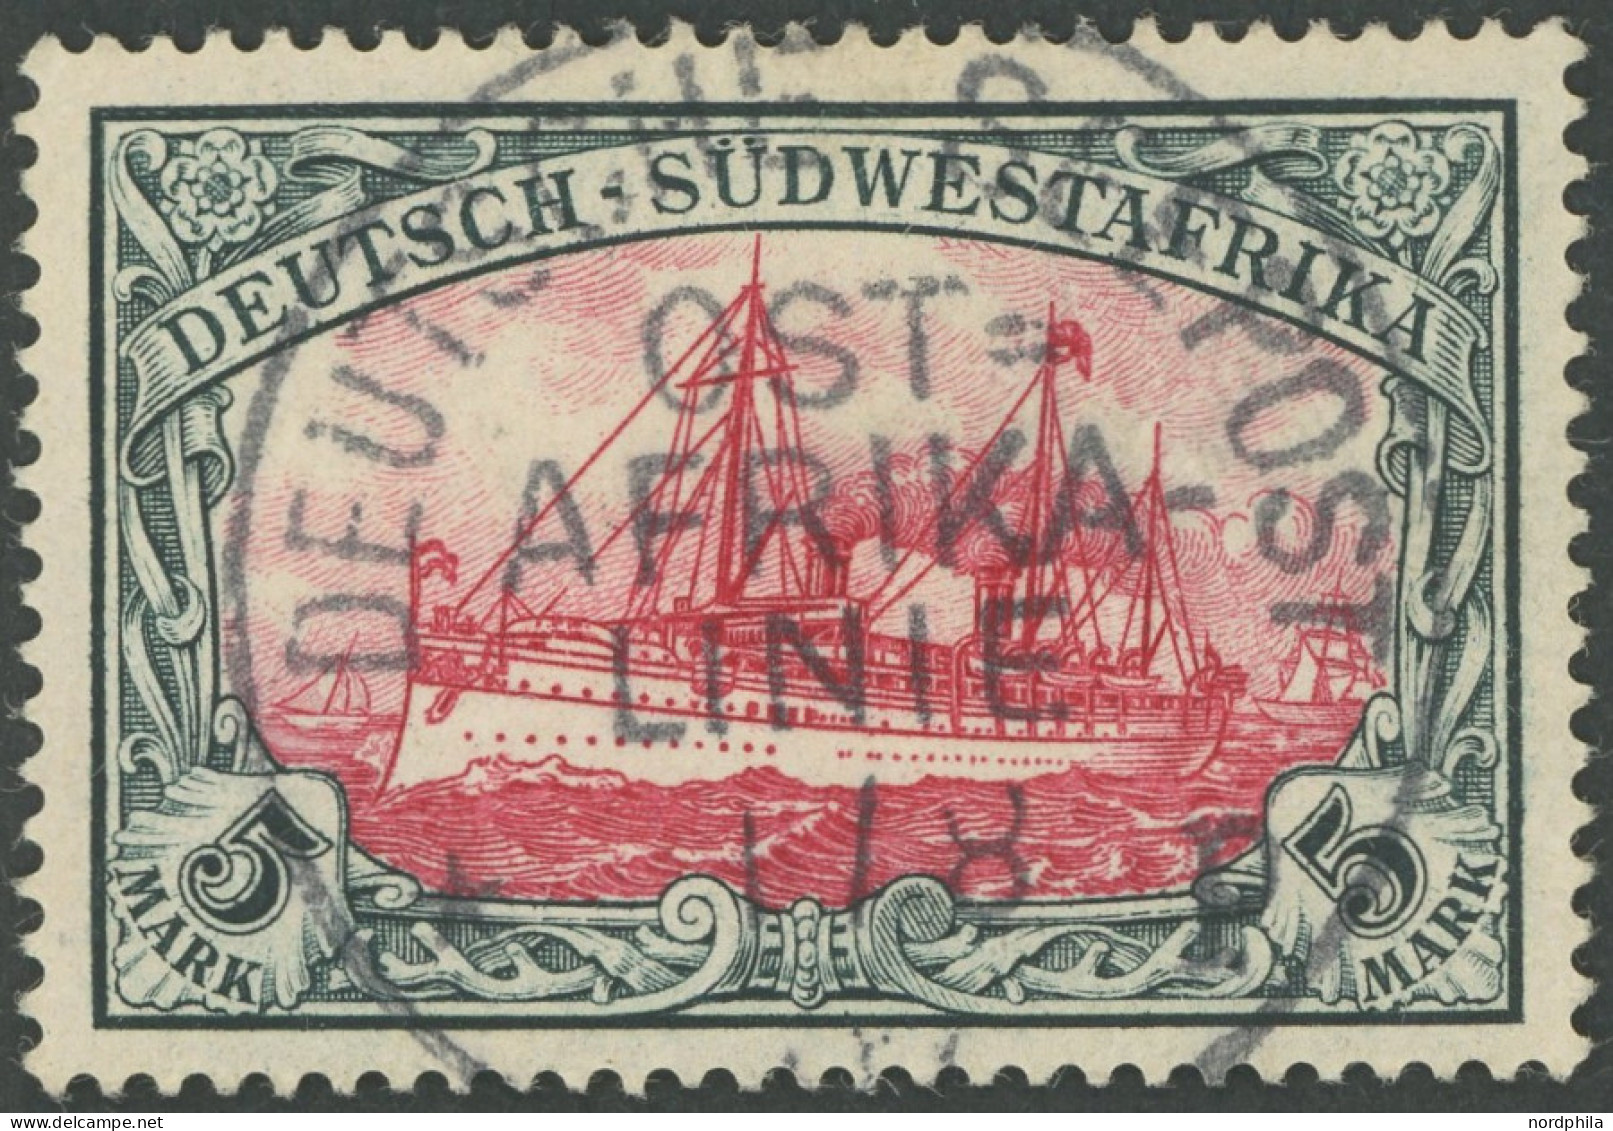 DSWA 23 O, 1901, 5 M. Grünschwarz/bräunlichkarmin, Ohne Wz., Zentrischer Seepoststempel OST AFRIKALINIE P, Feinst, Gepr. - German South West Africa